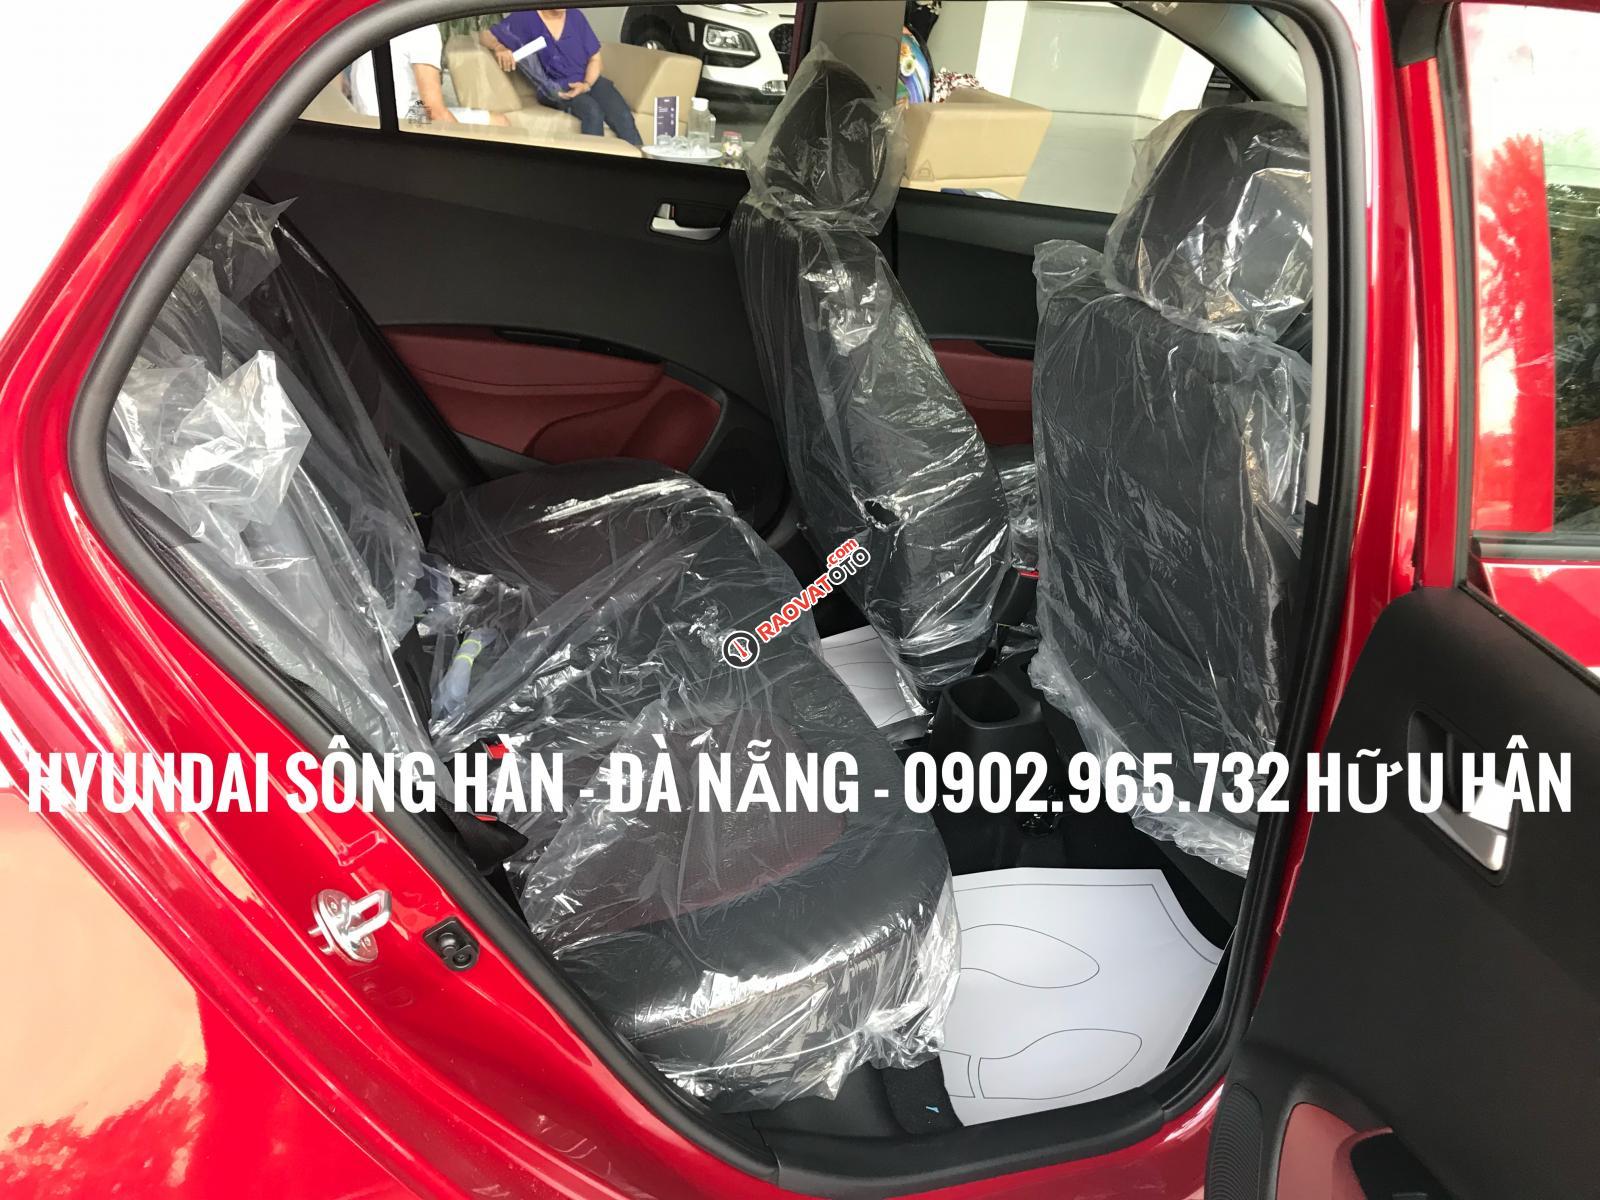 Bán xe Hyundai Grand i10 2019, màu đỏ, giá tốt nhất Đà Nẵng, chỉ cần 150 triệu để nhận xe, LH: 0902.965.732 Hữu Hân-2